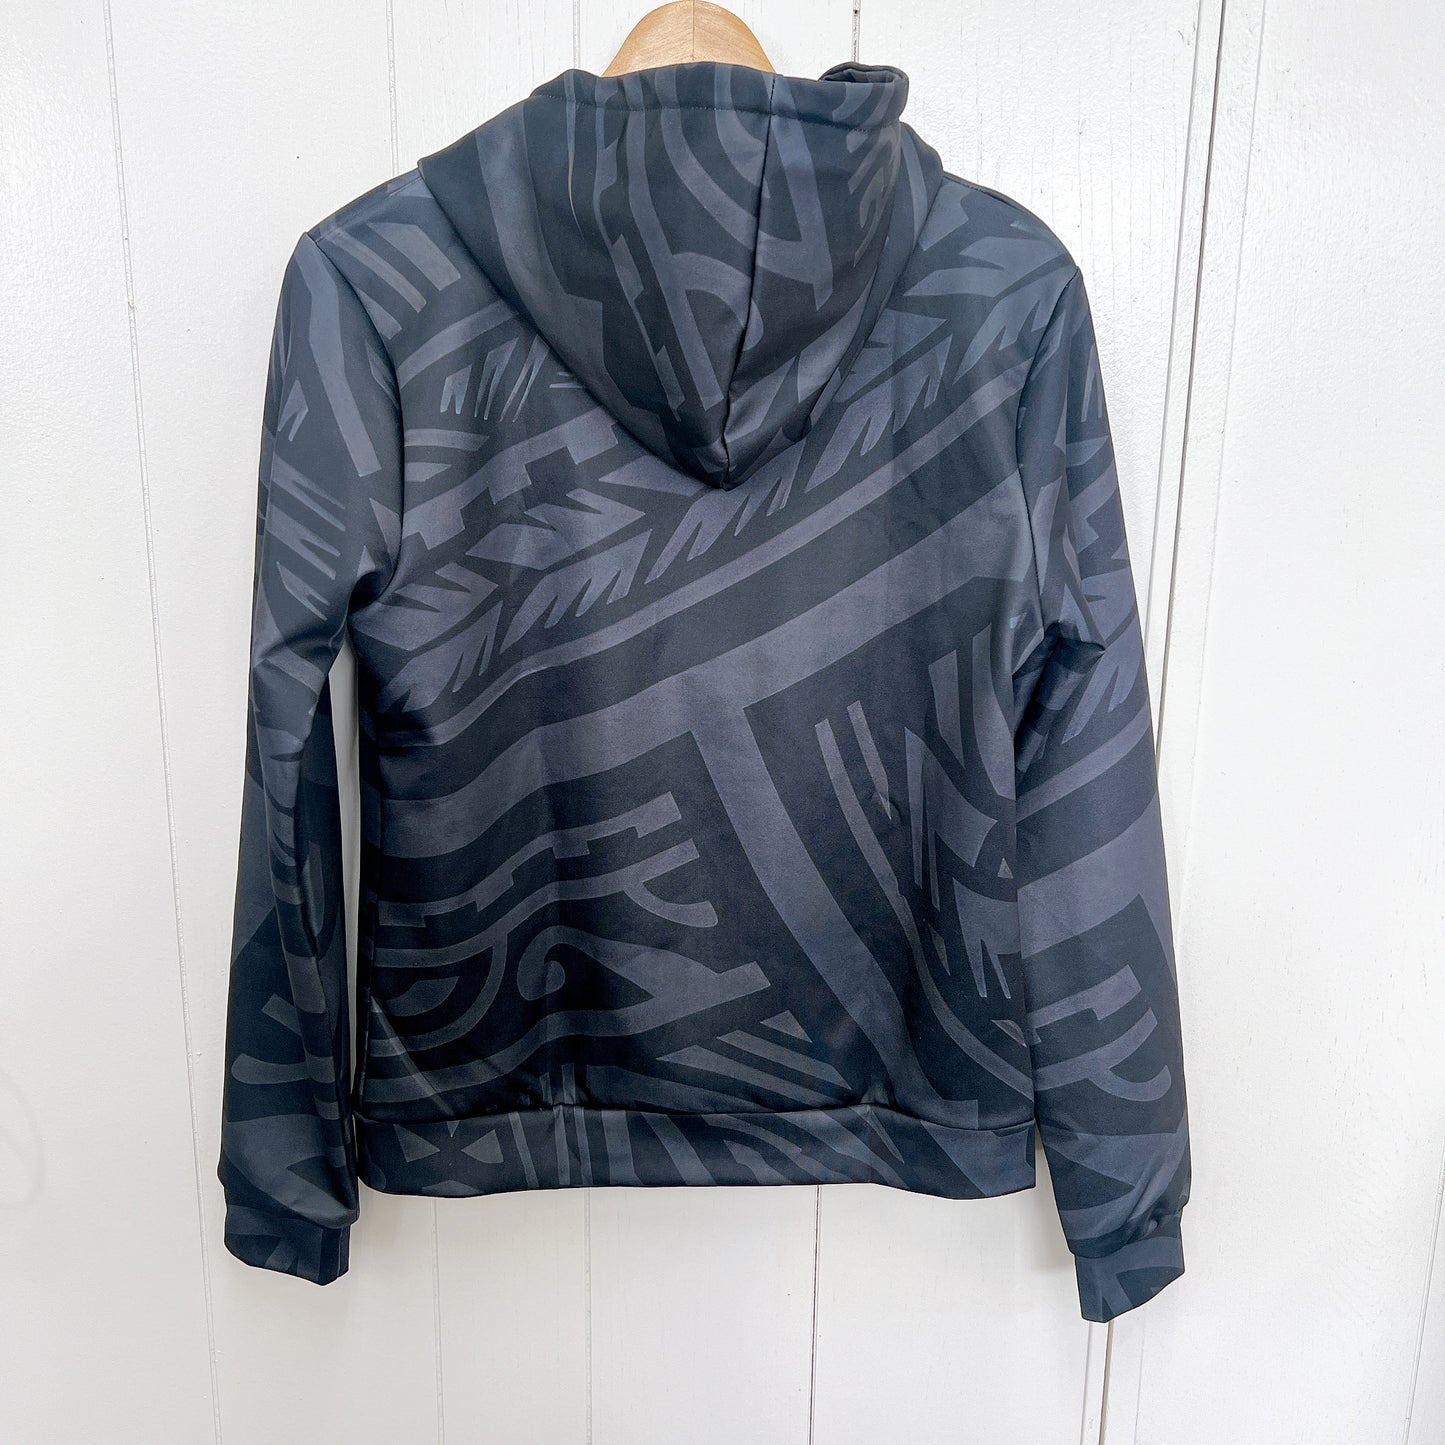 Manahau original zip hoodie